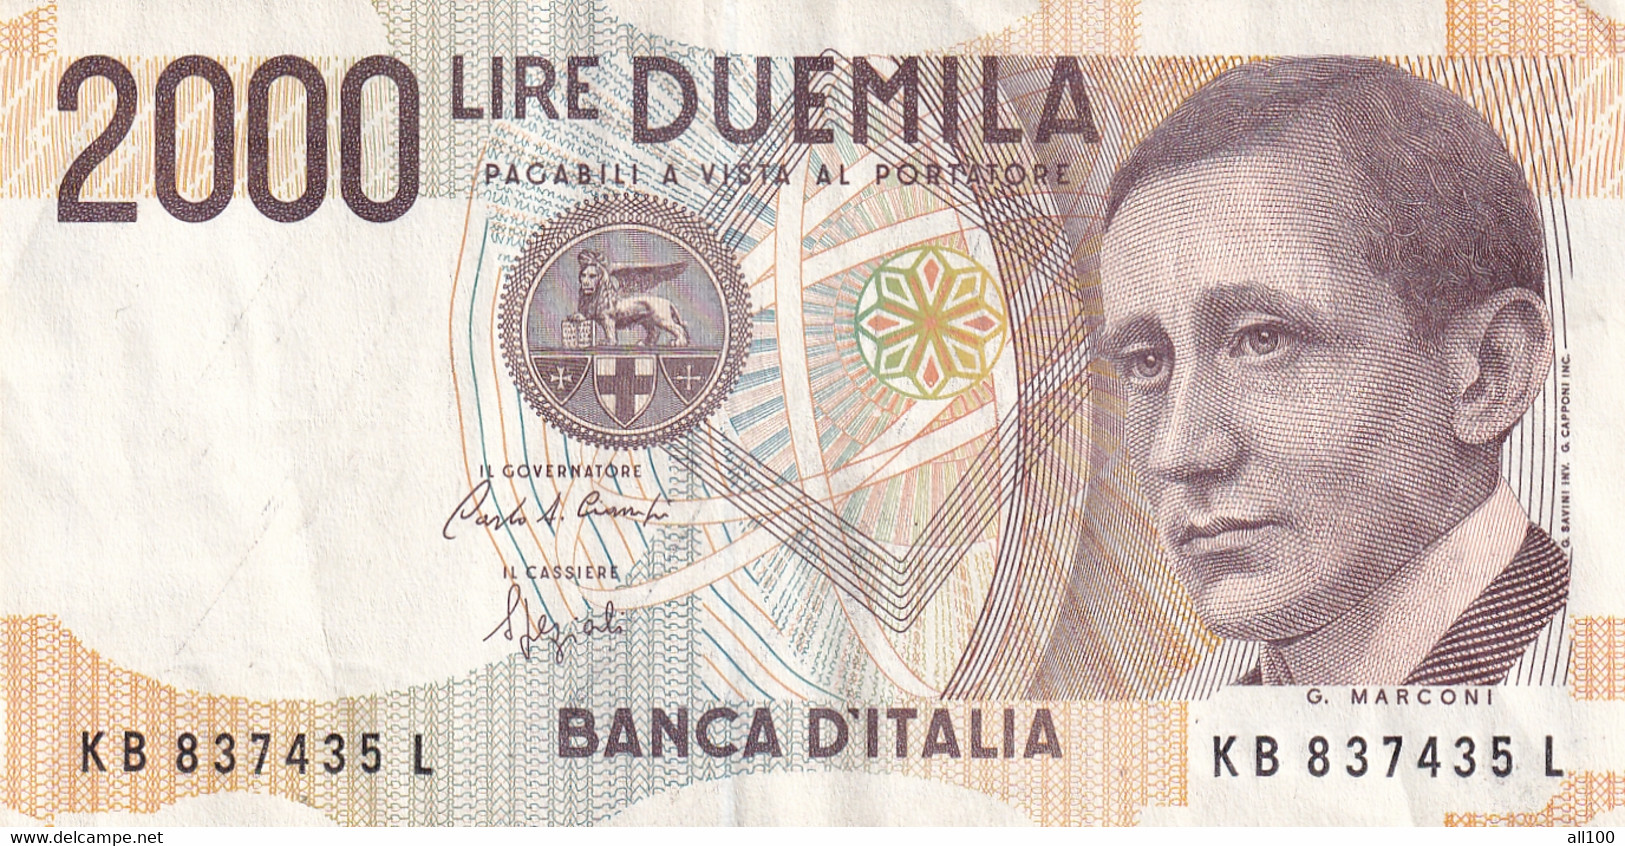 DUEMILA LIRE BANCA D'ITALIA DIRECTO MINISTERIALE 3 OTTOBRE 1990 2000 LIRE BANKNOTE GOOD CONDITION - 2.000 Lire